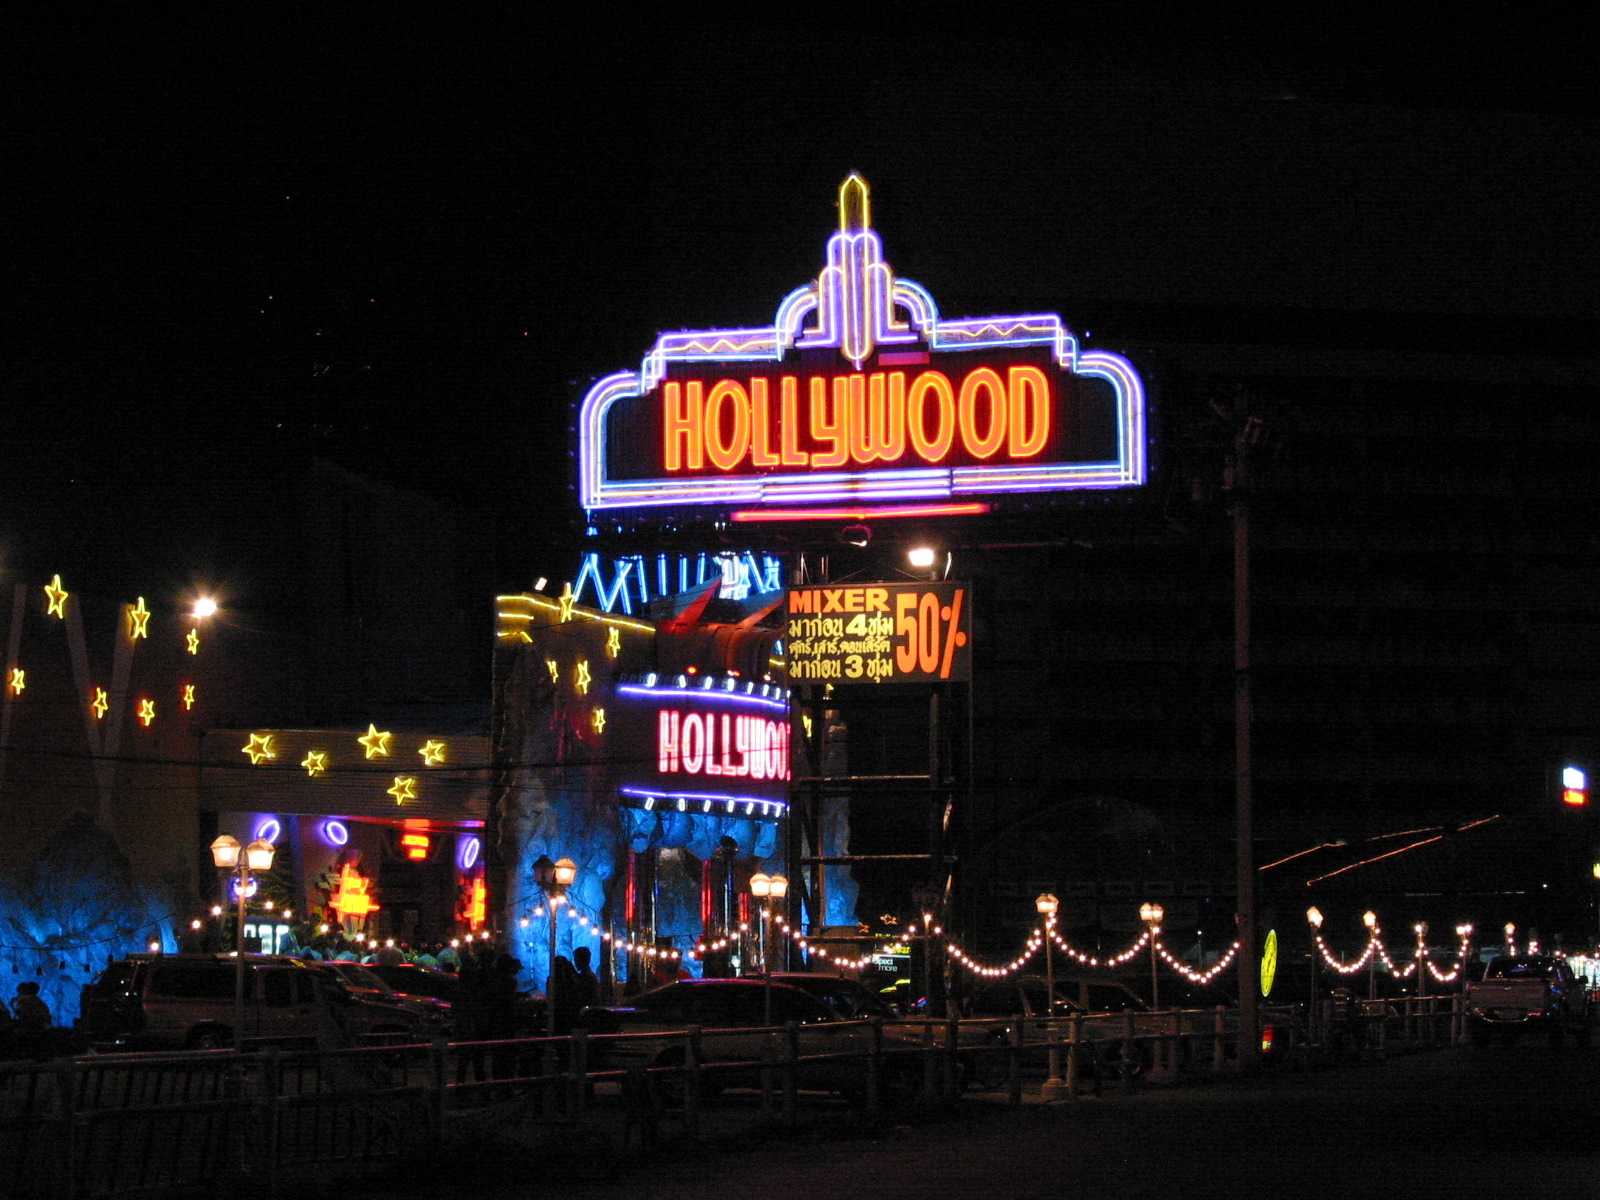 hollywood舞廳是外國人觀光客常去狂歡的地方。